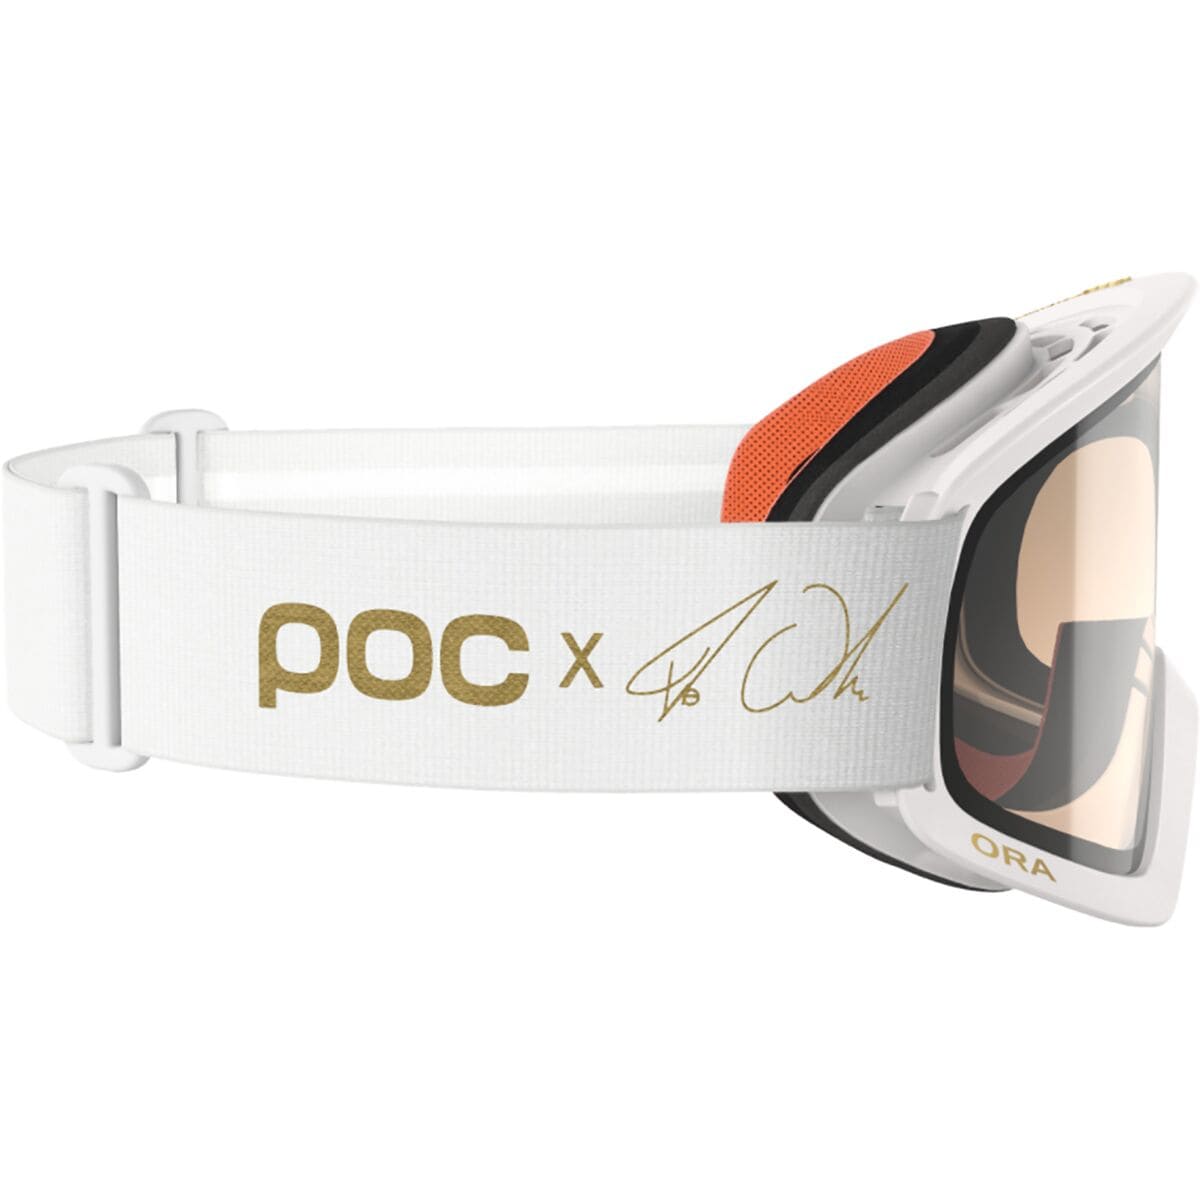  POC Ora Clarity Fabio Edition Goggles - Bike